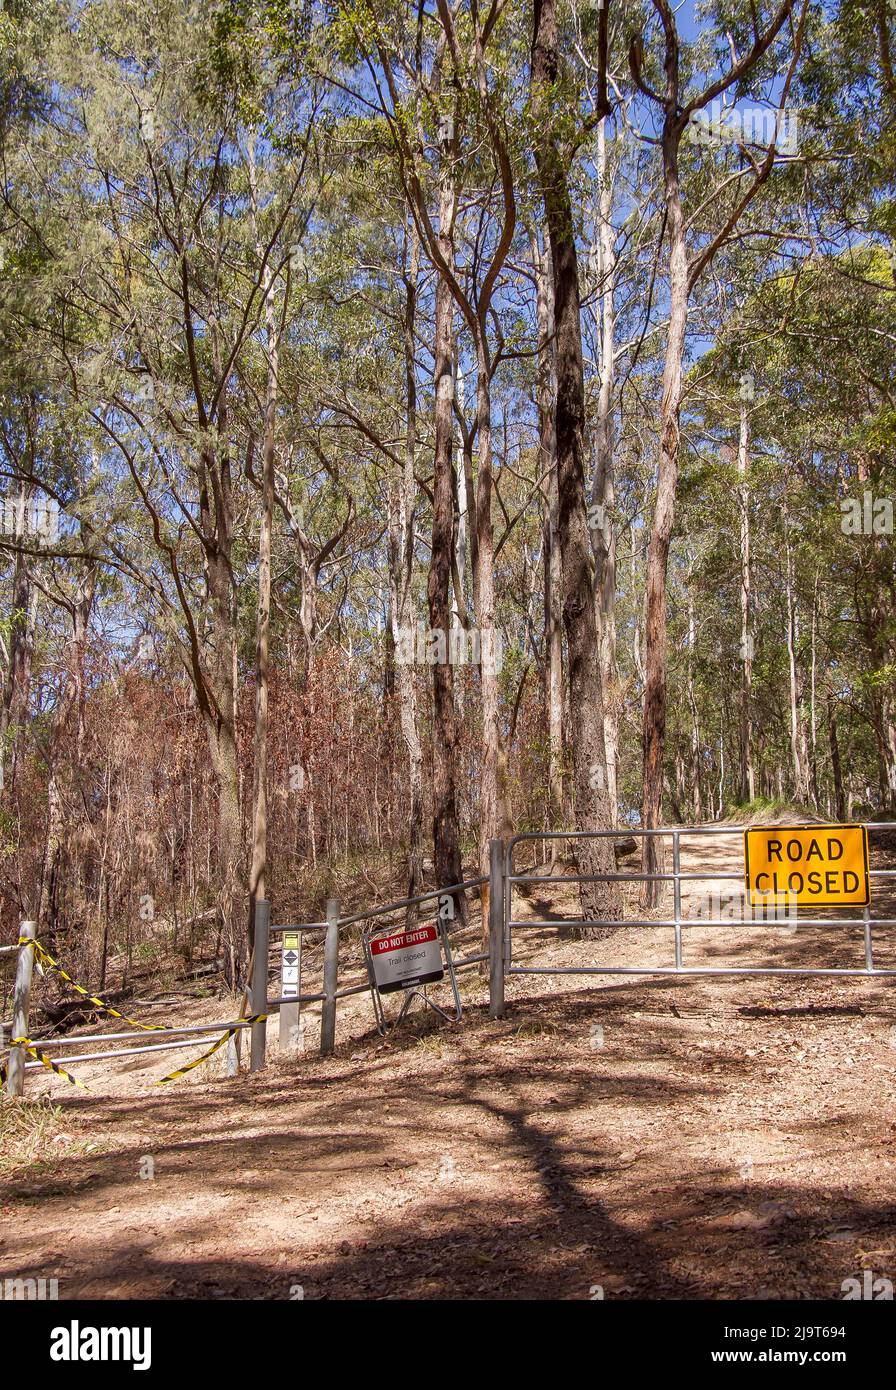 Ende der Straße im Eukalyptuswald. Tor blockiert raue Spur. Kein Zugang zum Fahrzeug. Mountainbike-Pfad geschlossen. Trocken, sonnig, Queensland, Australien. Stockfoto